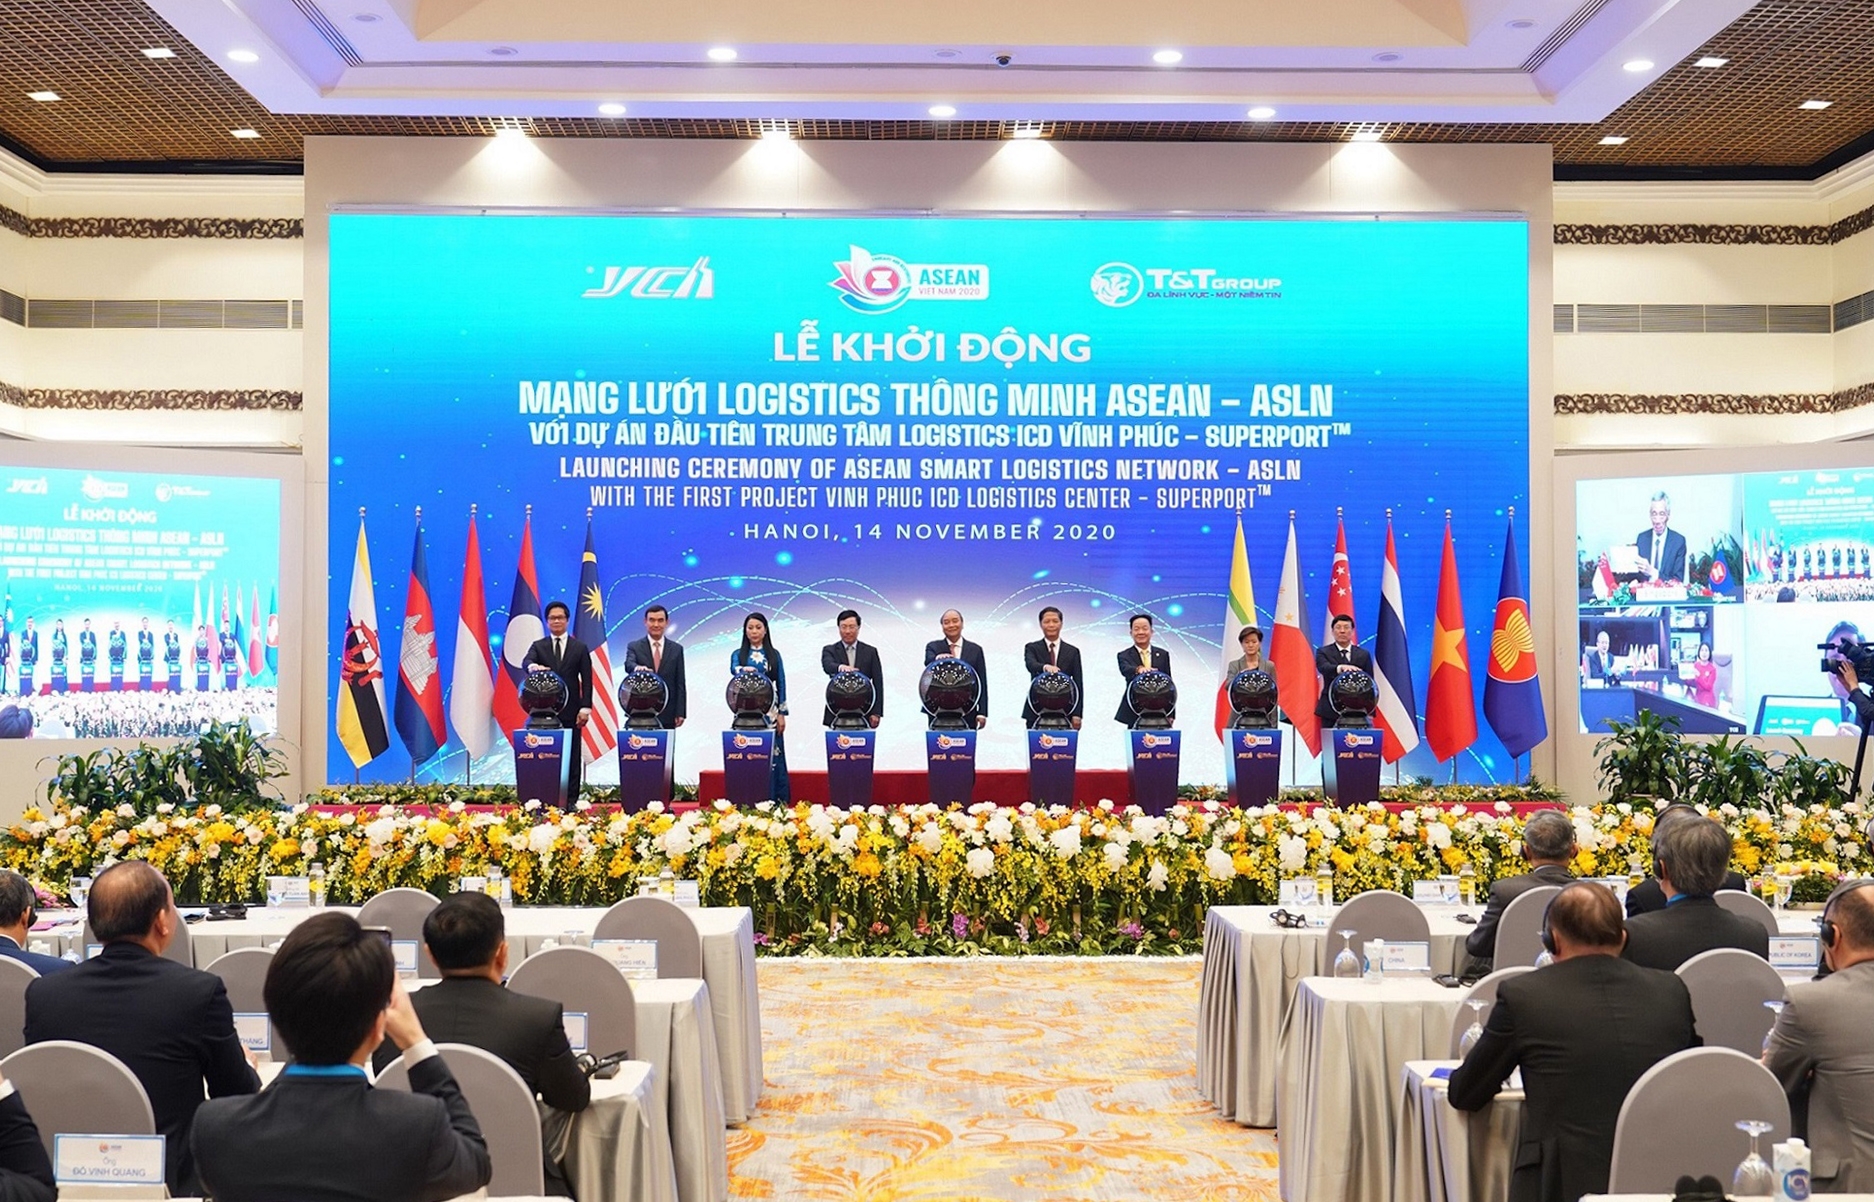 Thủ tướng khởi động mạng lưới logistics thông minh Asean (ASLN) với dự án đầu tiên 